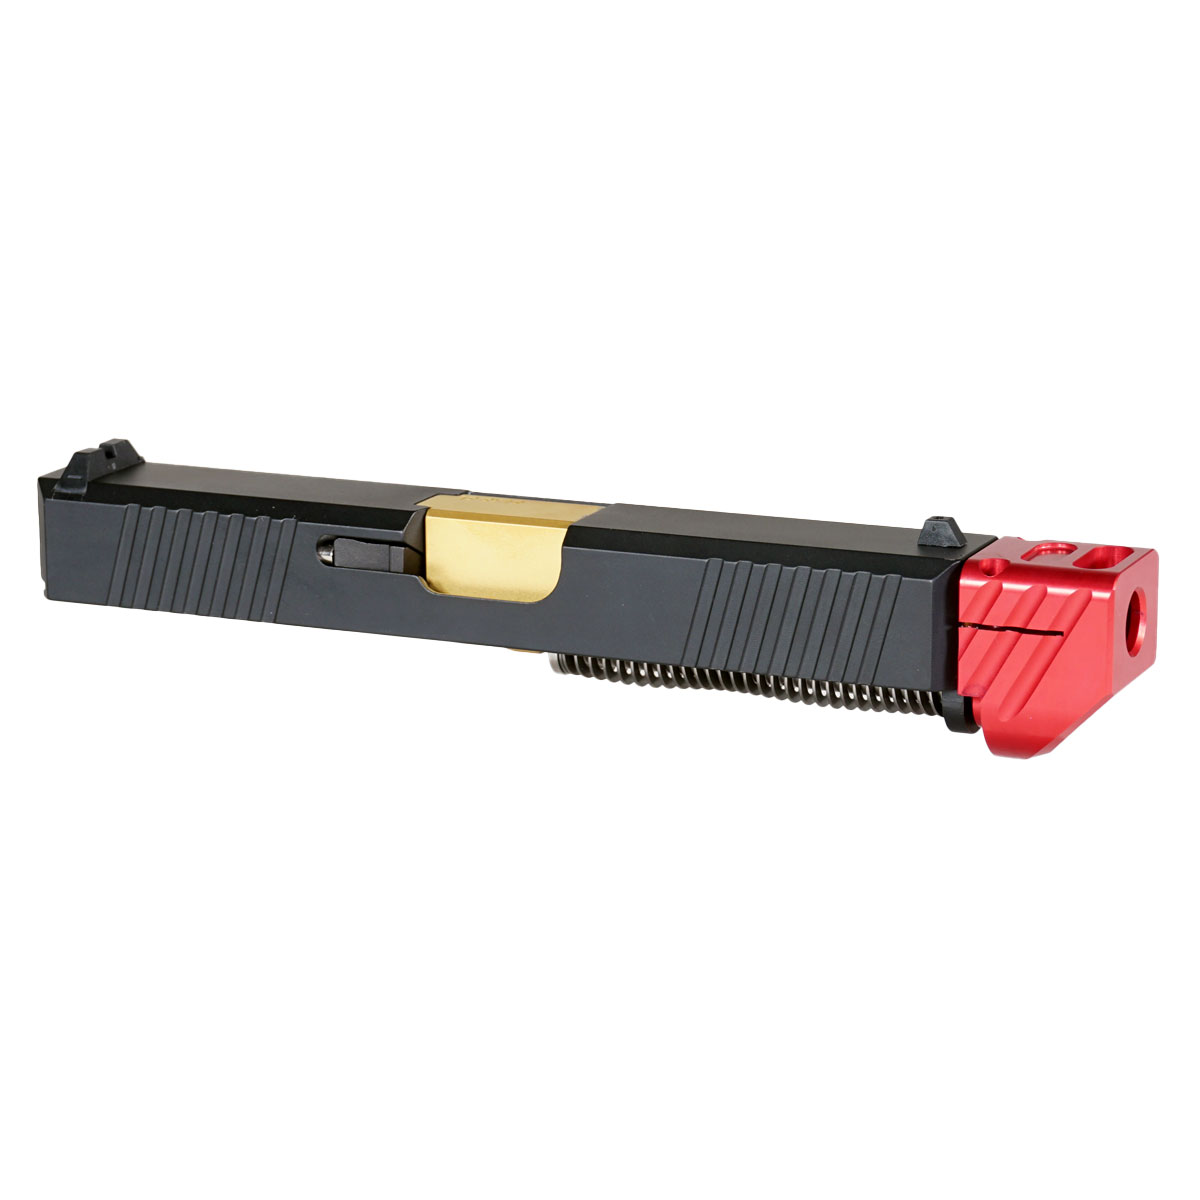 OTD 'Oakley V3 w/ Red Compensator' 9mm Complete Slide Kit - Glock 19 Gen 1-3 Compatible